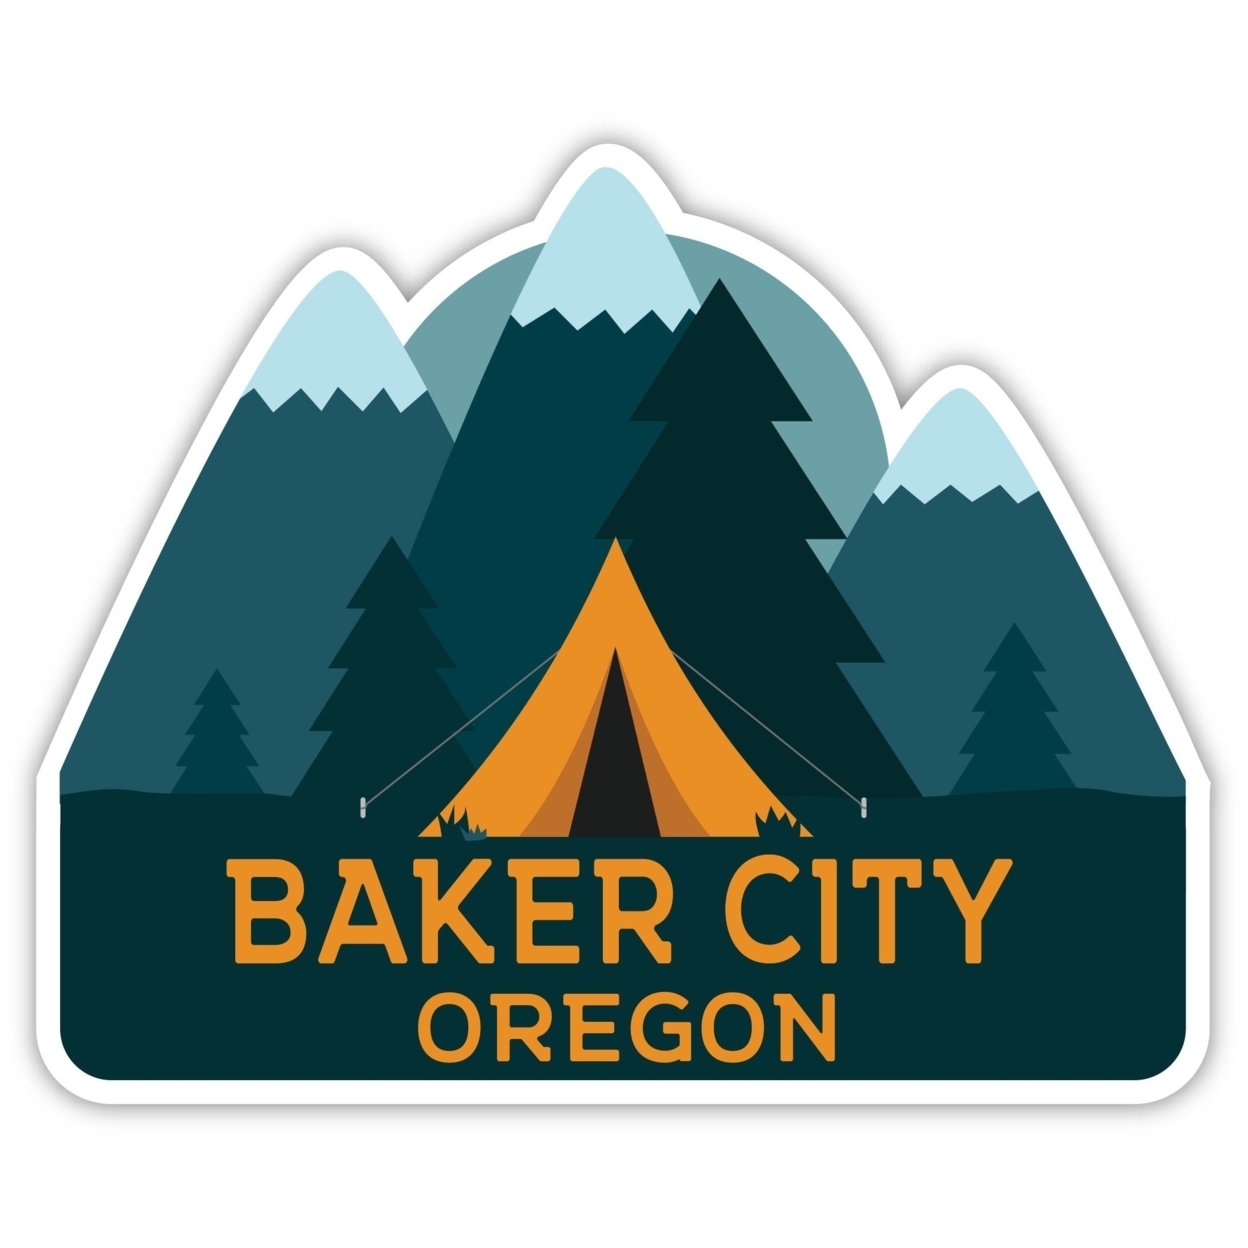 Baker City Oregon Souvenir Decorative Stickers (Choose Theme And Size) - Single Unit, 12-Inch, Tent